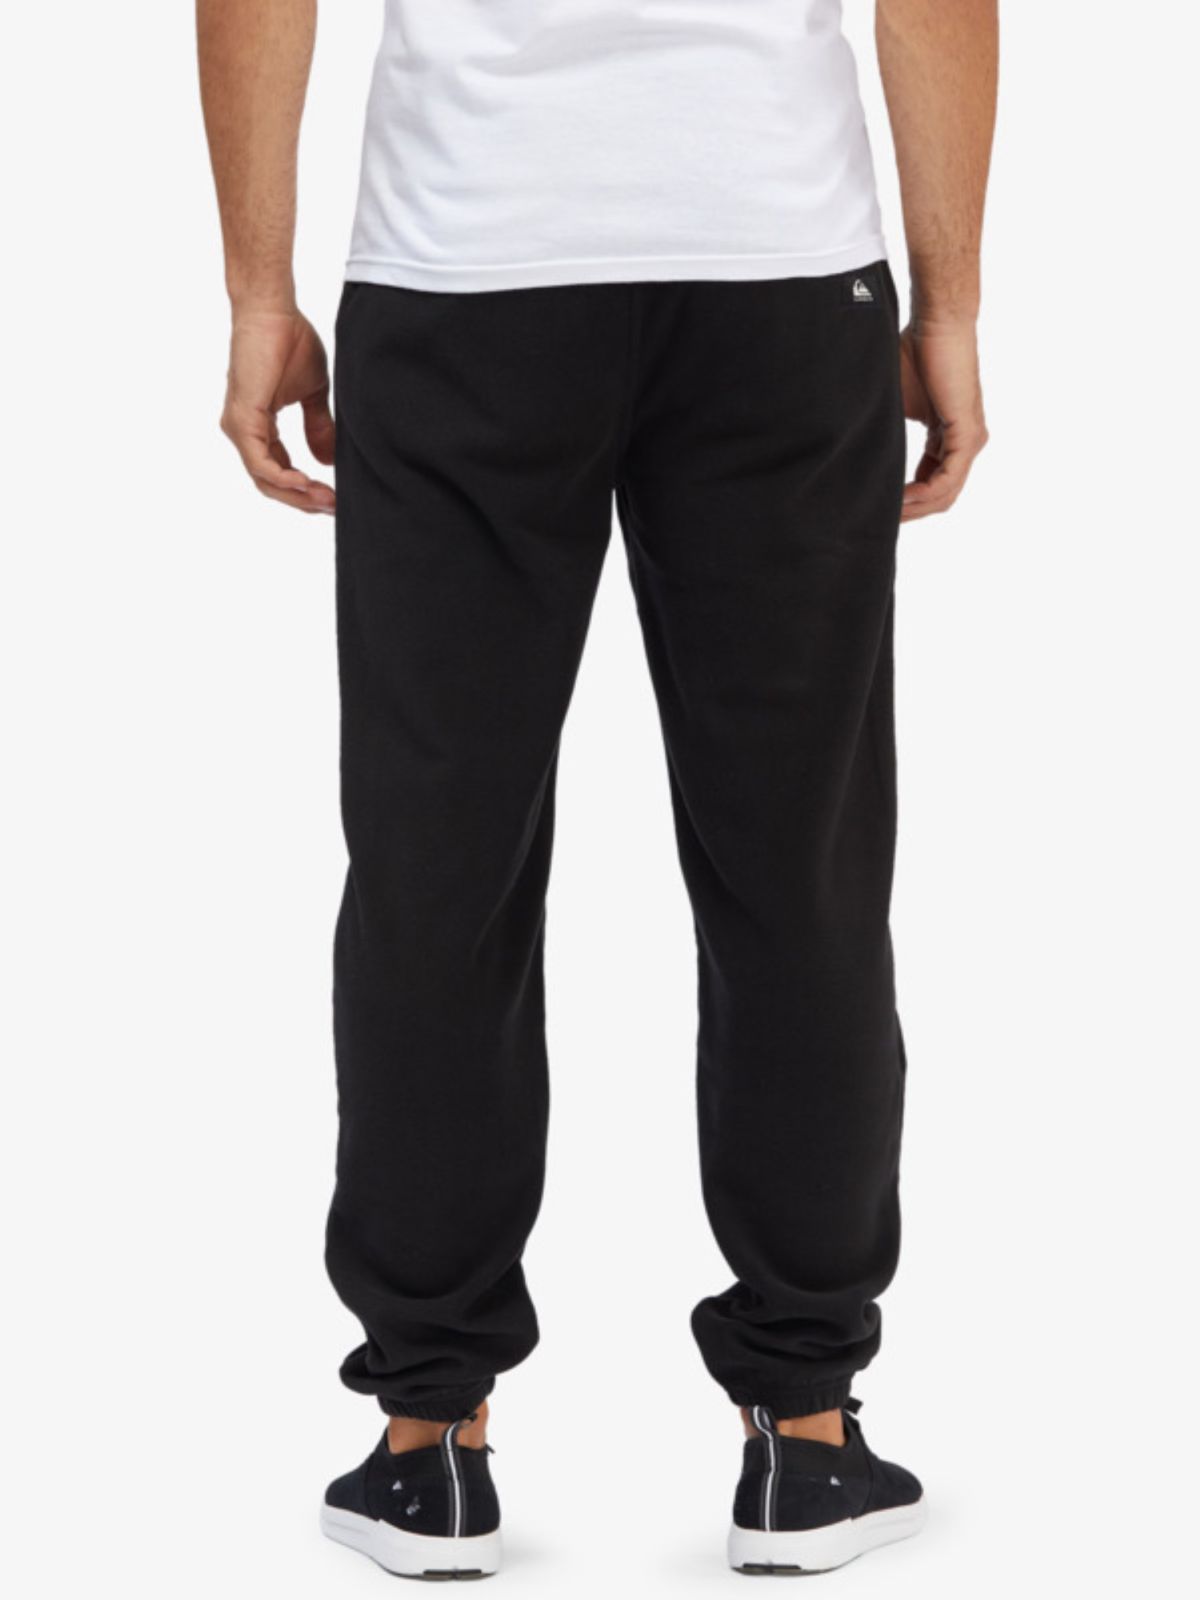  מכנסי טרנינג עם הדפס לוגו של QUIKSILVER